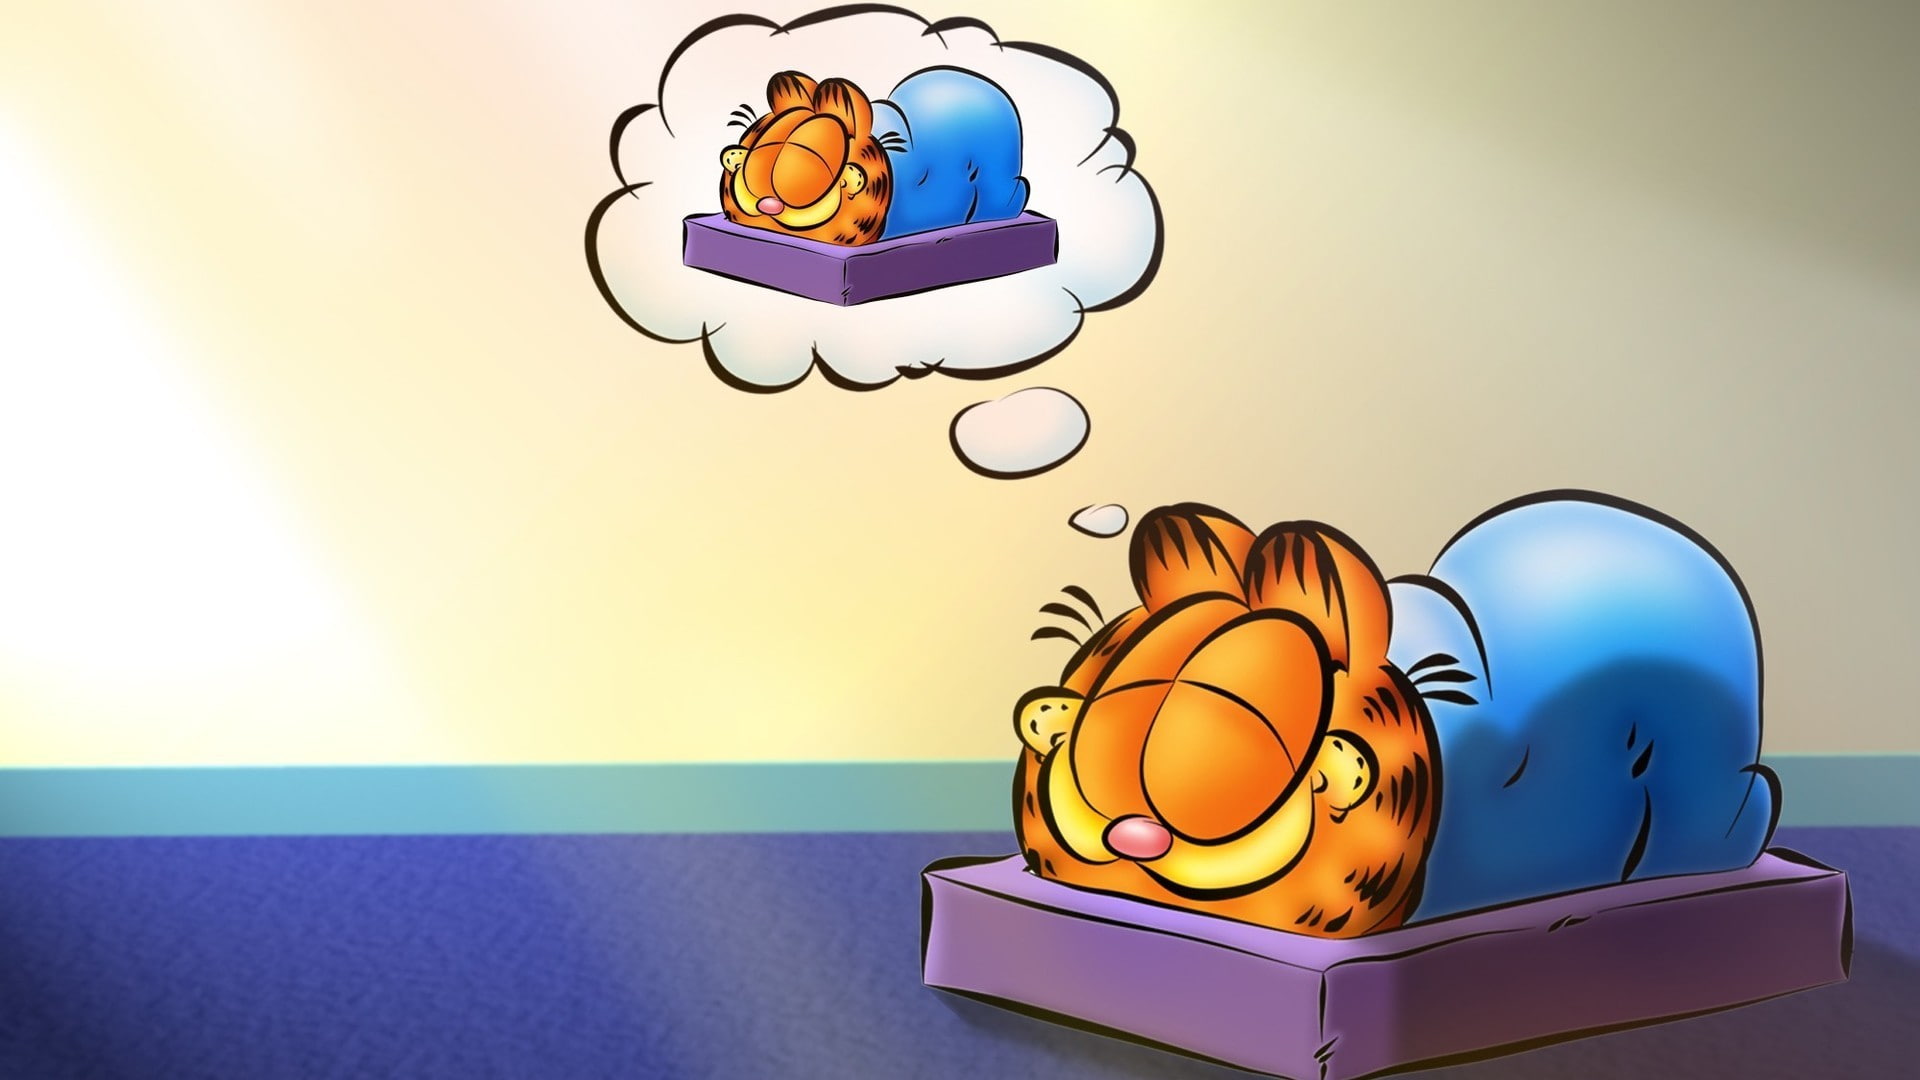 Garfield Cat Sleep HD, cartoon/comic